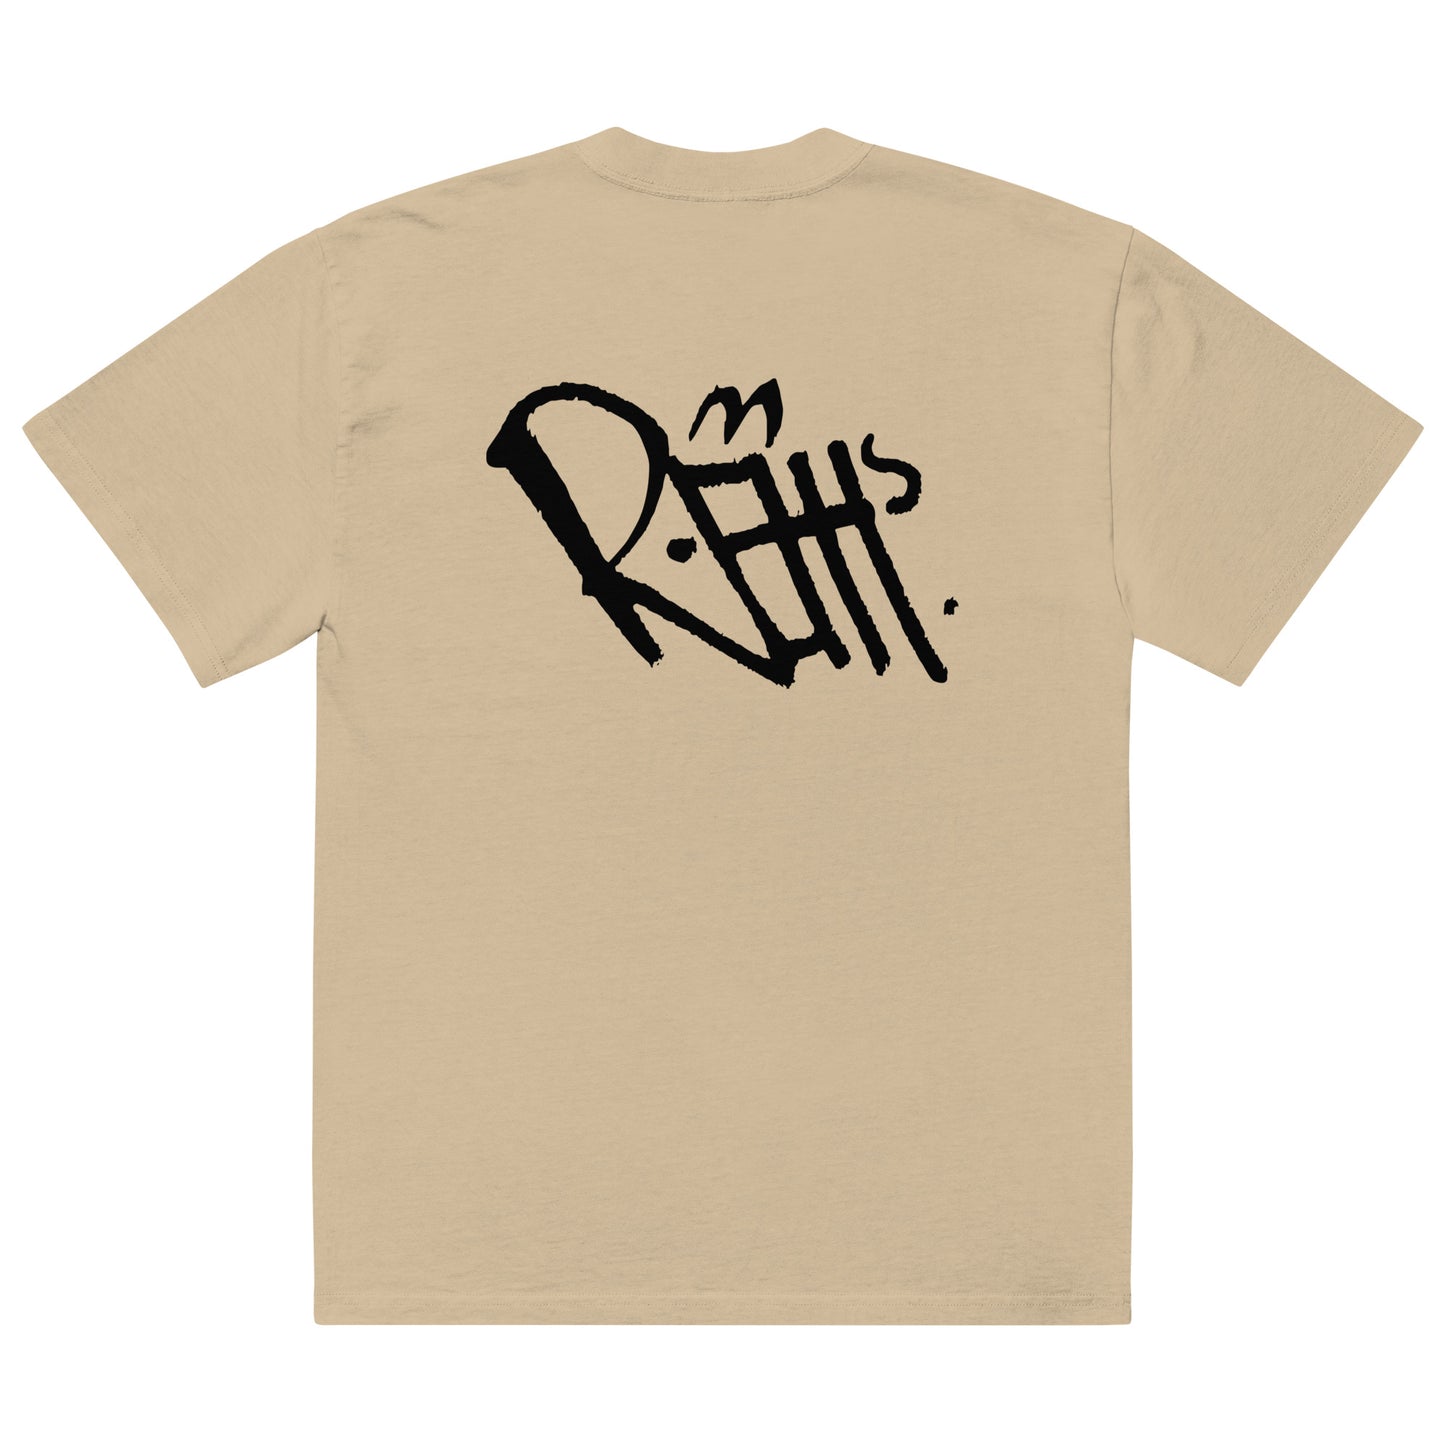 REHH Basic - Oversized faded t-shirt (Khaki)